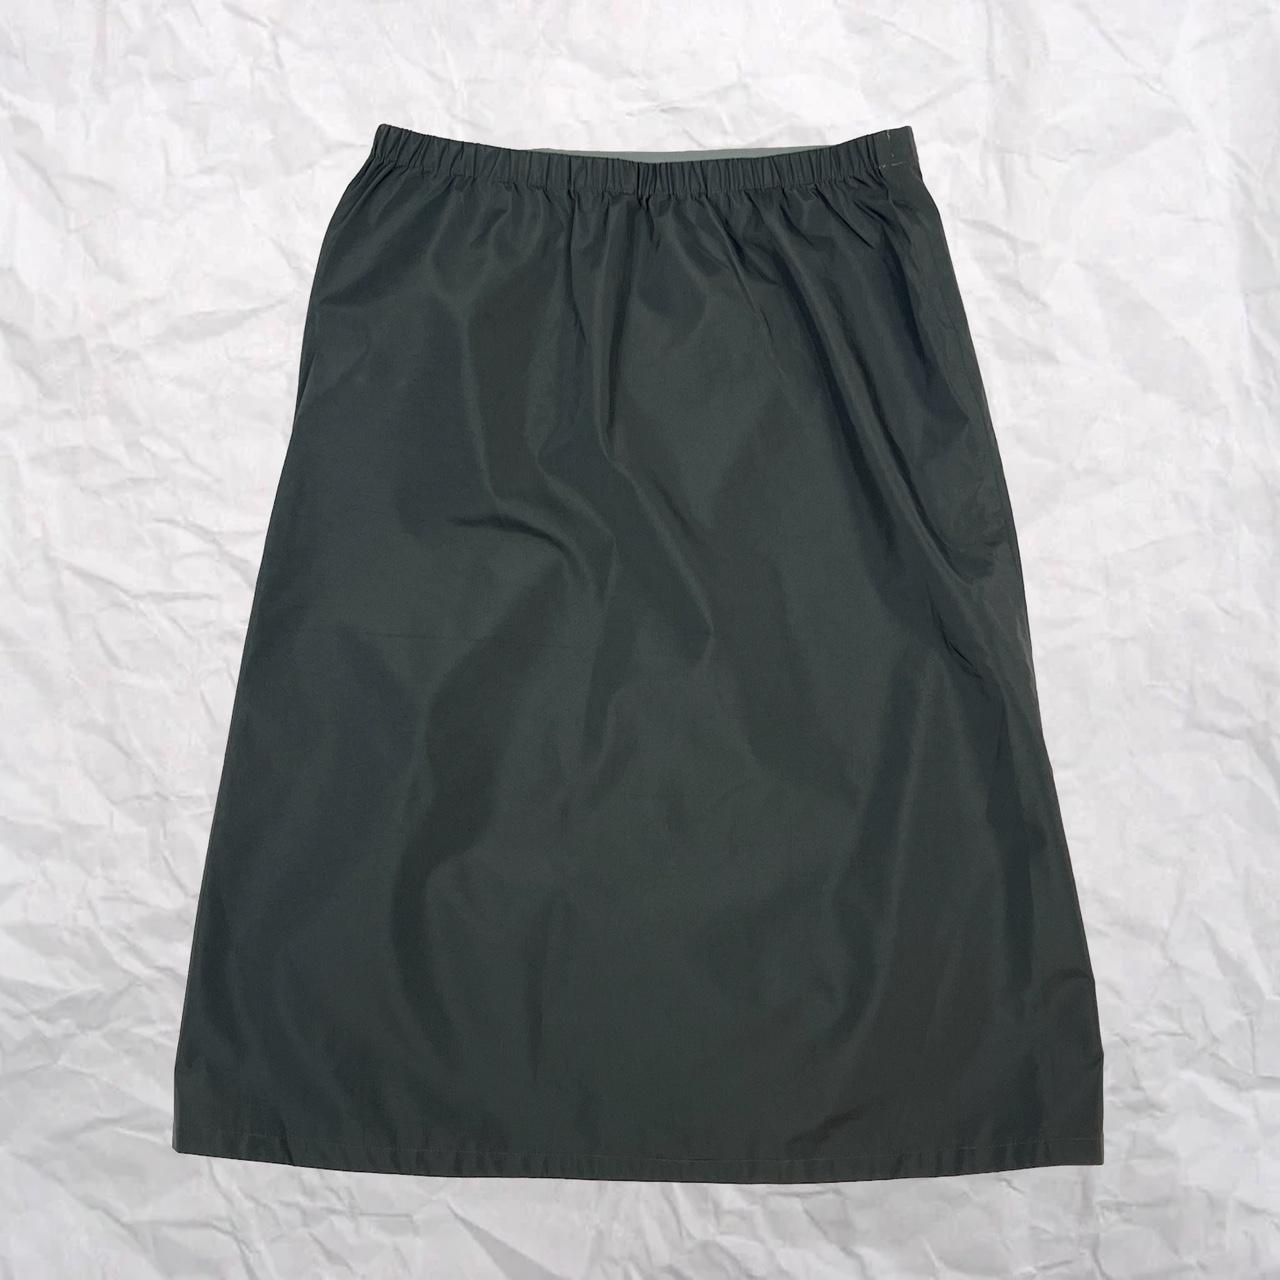 Montbell Waterproof Skirt Technical waterproof... - Depop